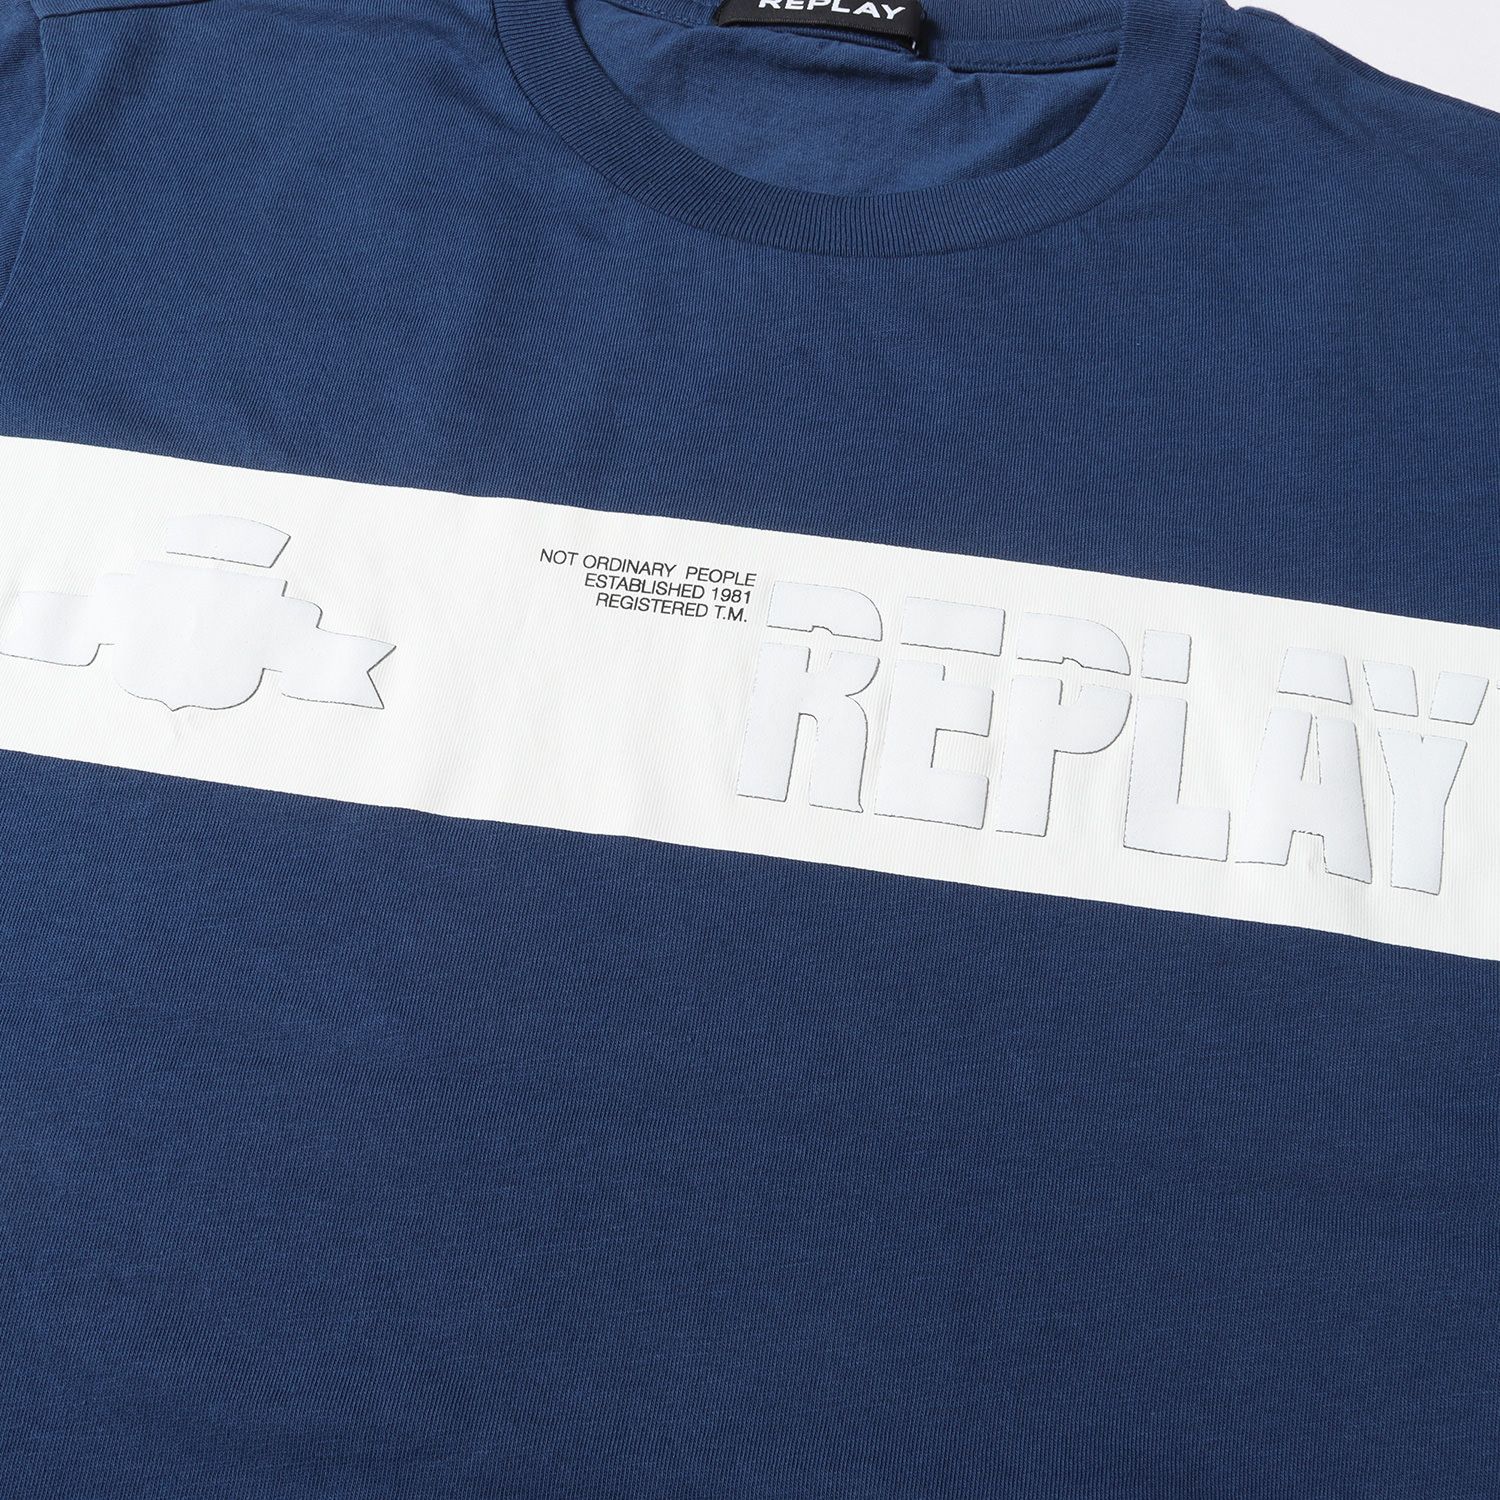 REPLAY リプレイ Tシャツ サイズ:S エンボス ロゴ クルーネック 半袖 Tシャツ M6011.000.2660 ダークブルー 青 白 トップス カットソー 薄手 コットン【メンズ】【美品】